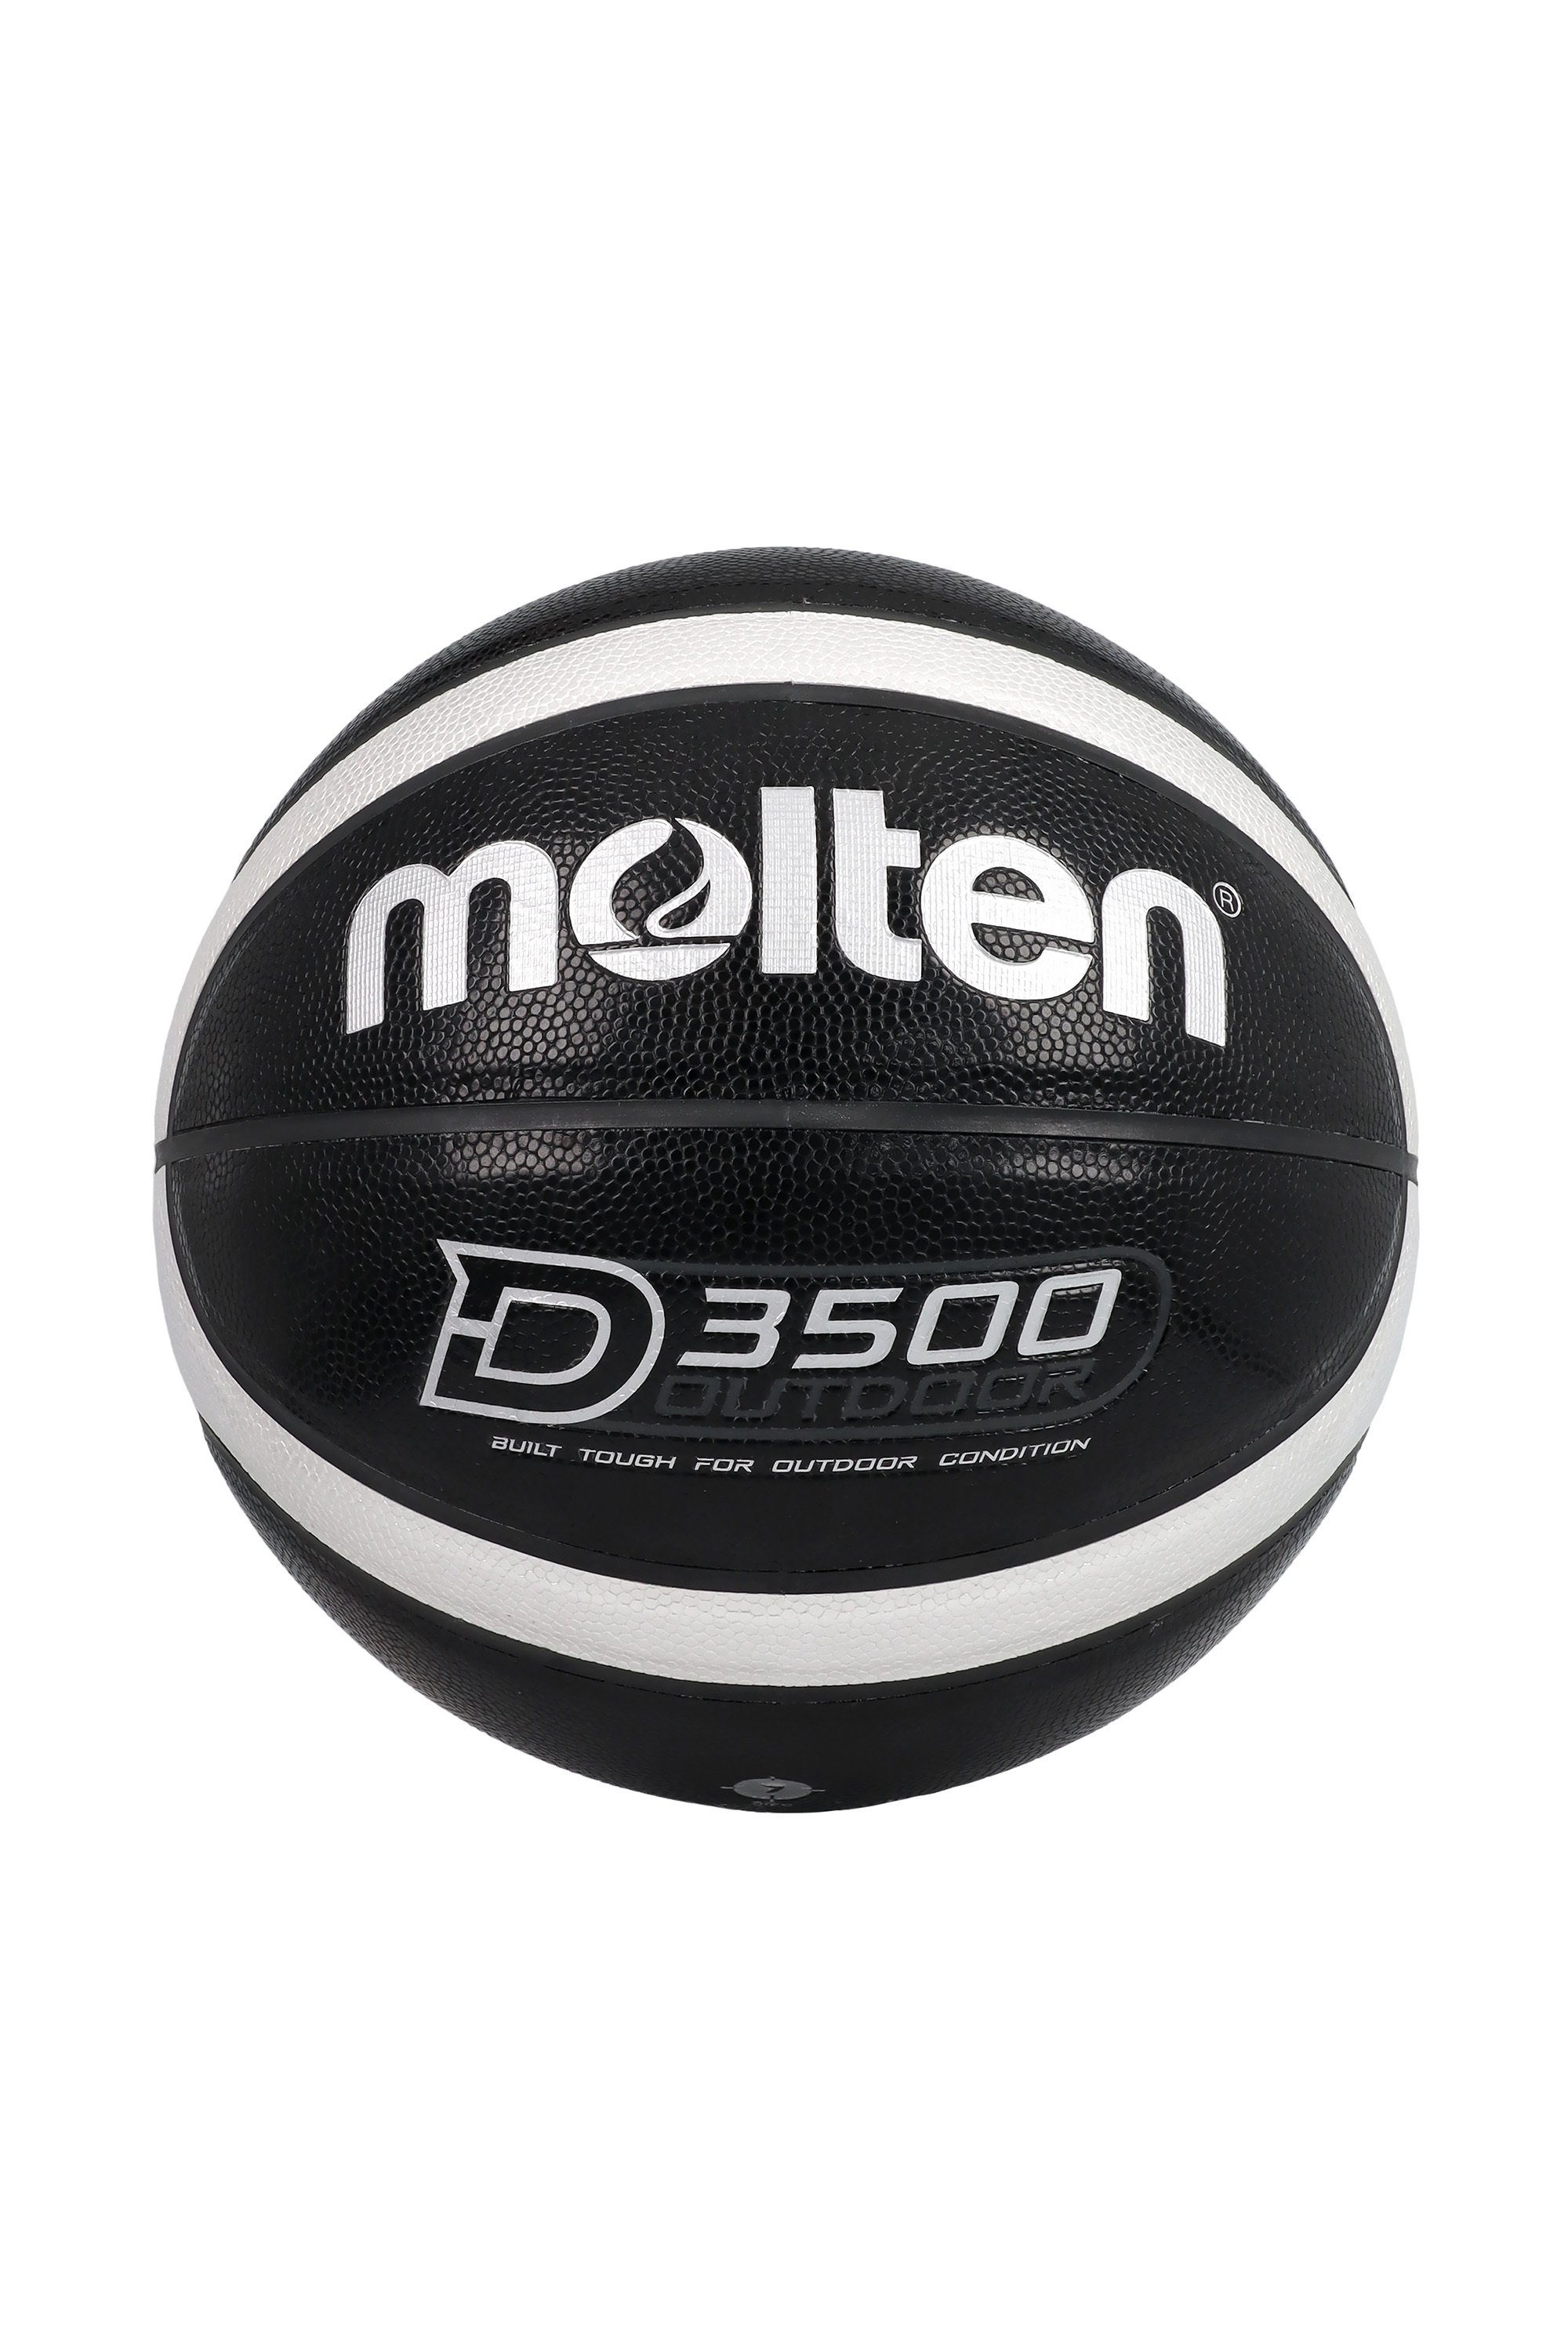 B7D3500-KS Basketball Größe 7 Molten